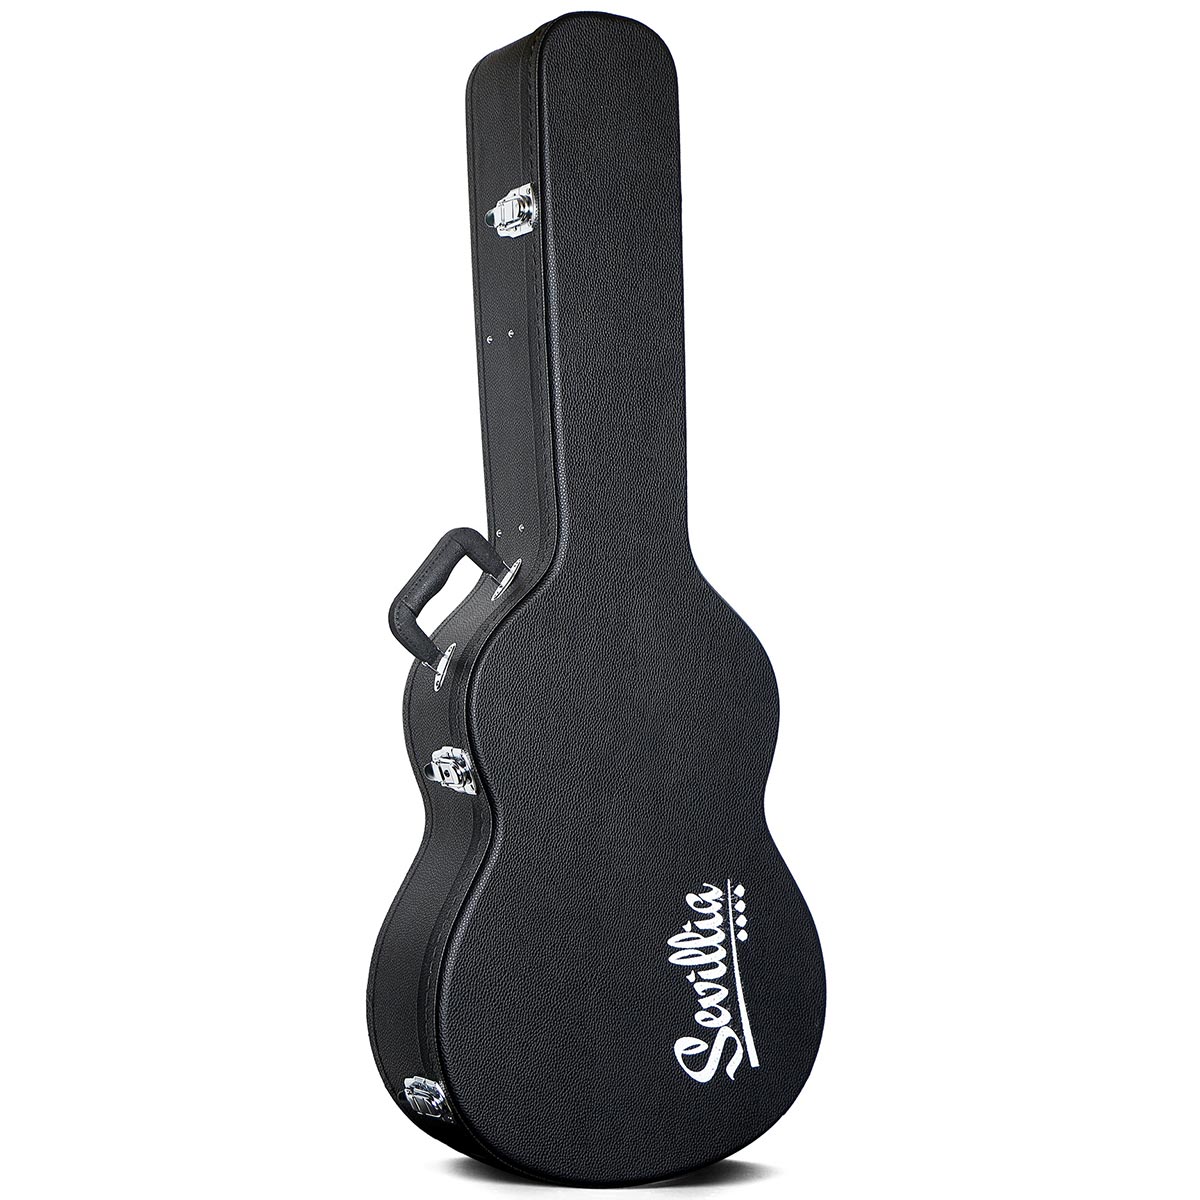 Кейсы для гитары Sevillia covers GHC-C39 акустическая гитара mono end pin endpin разъем для штепсельной вилки 6 35 1 4 дюйма материал copper с винтами частей гитары аксессуары